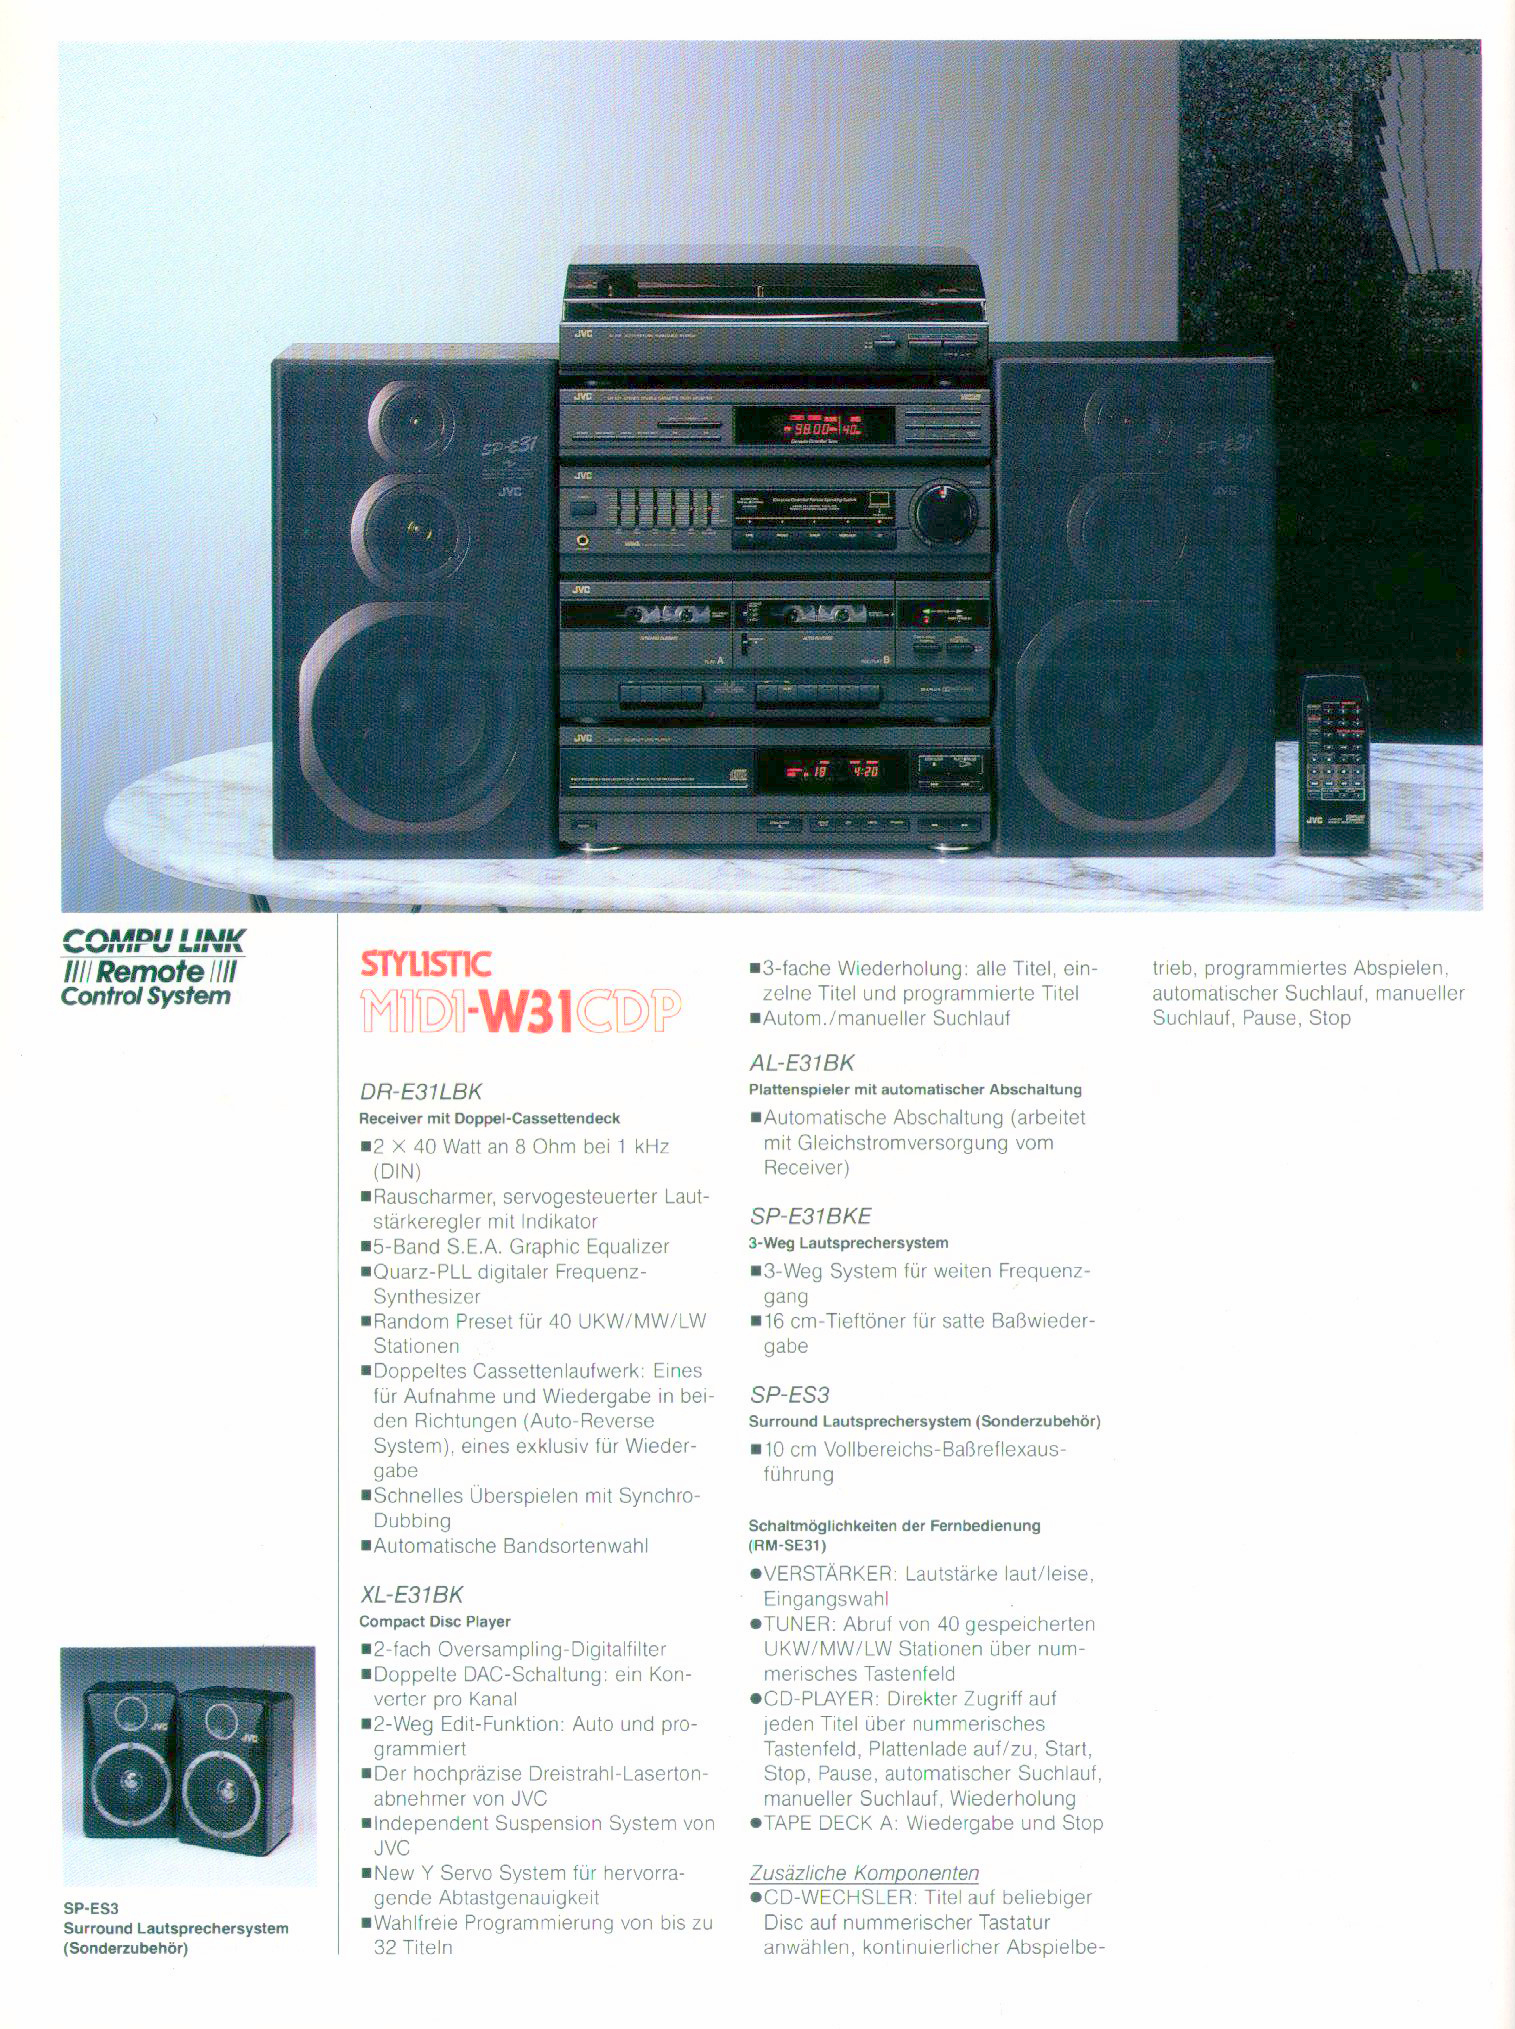 JVC Midi W-31 CD-Prospekt-1989.jpg